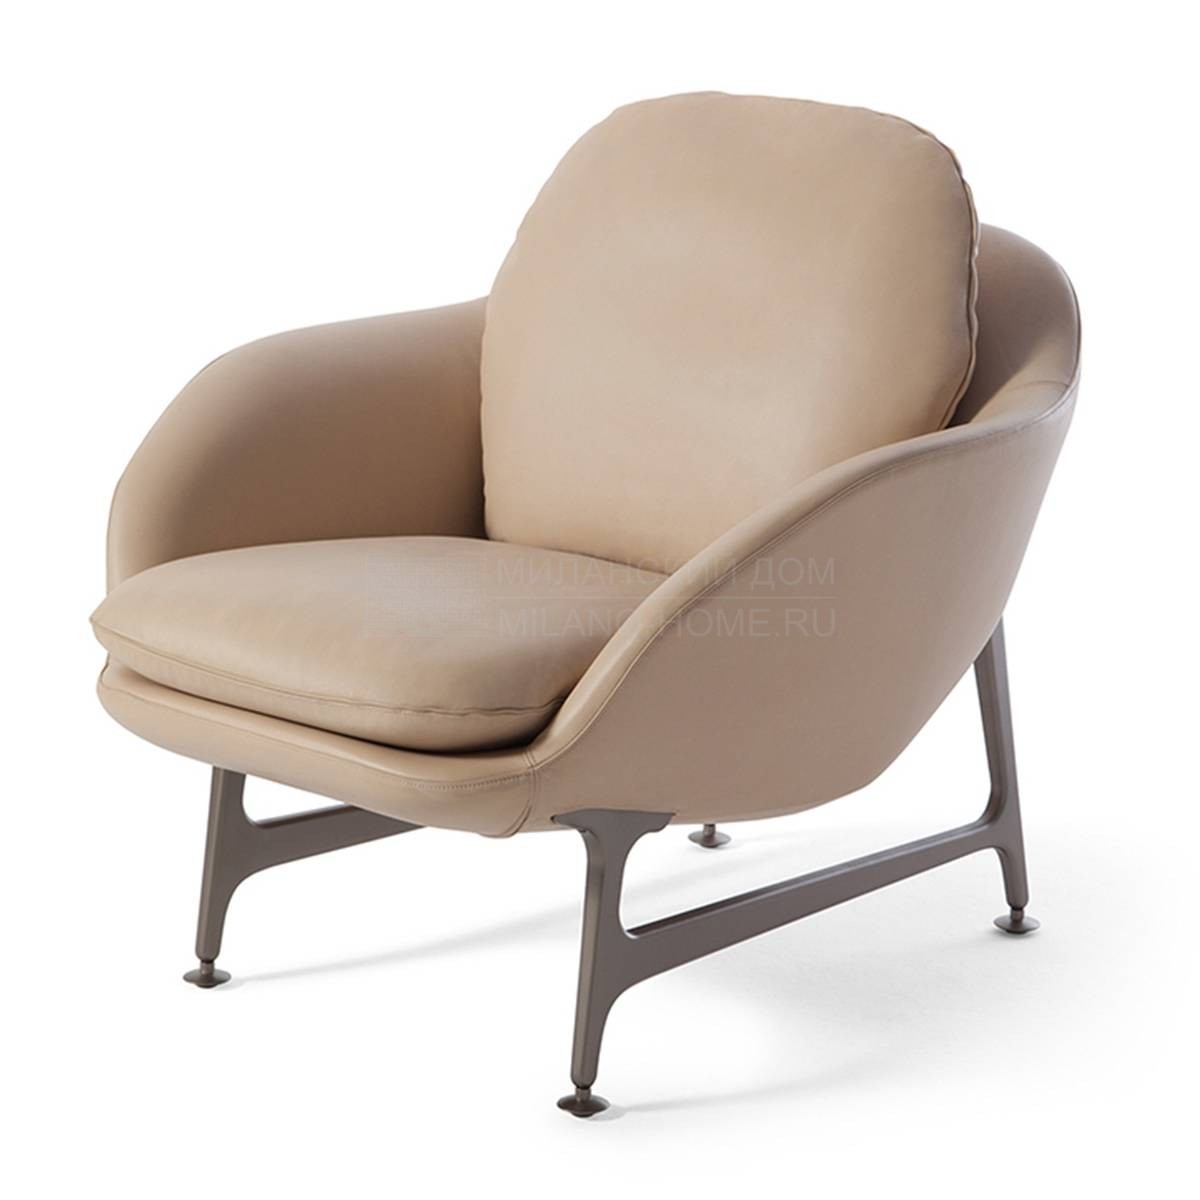 Кресло 399 Vico/armchair из Италии фабрики CASSINA